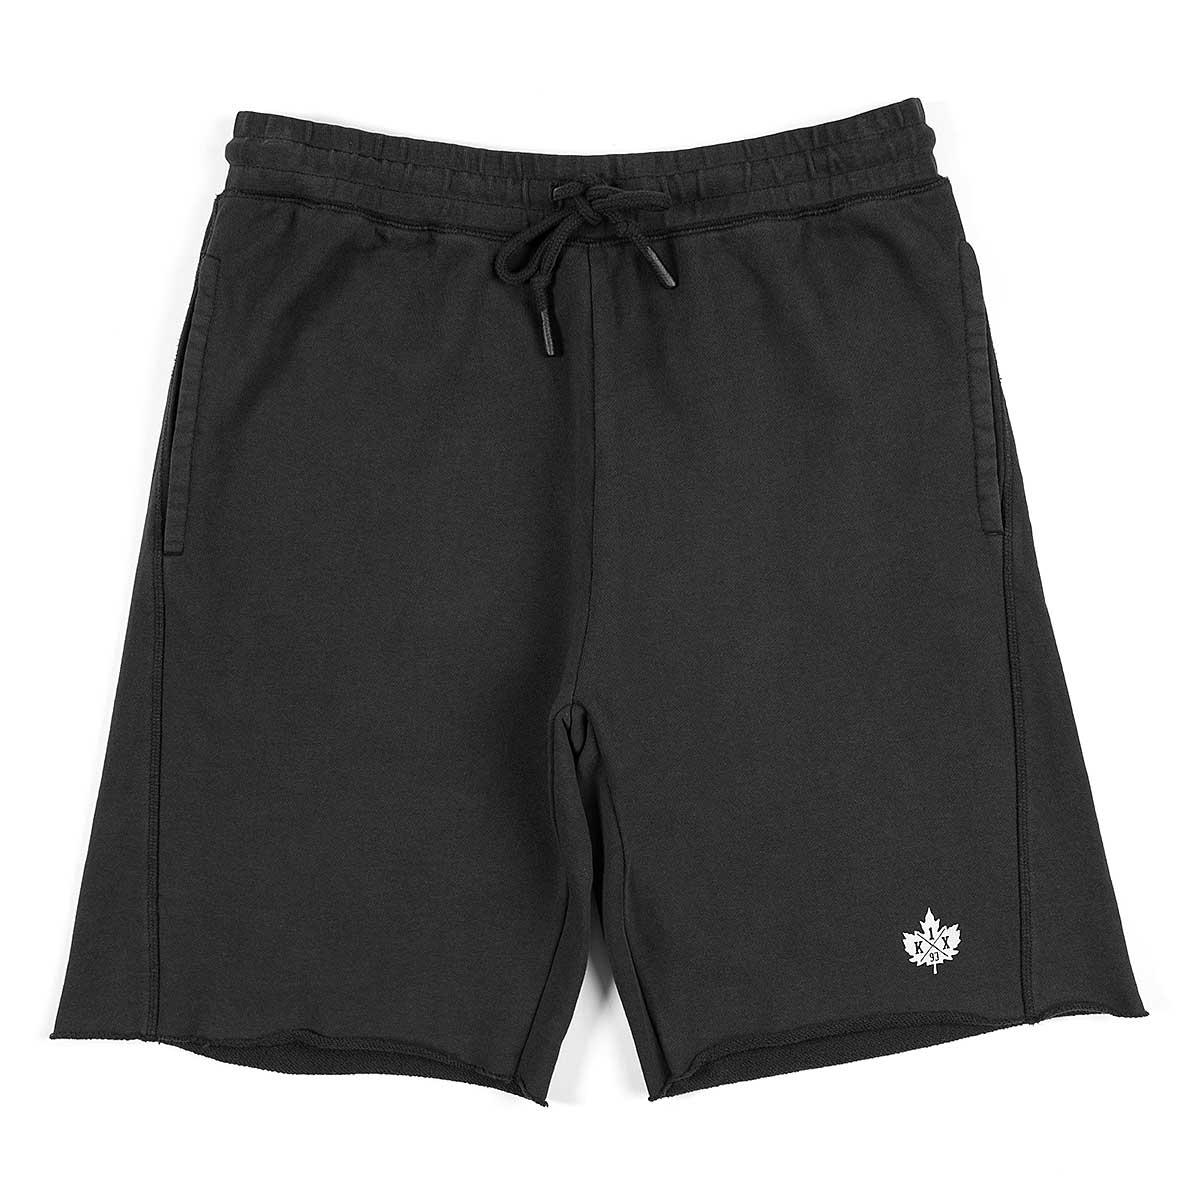 K1X Washed Authentic Shorts, Black